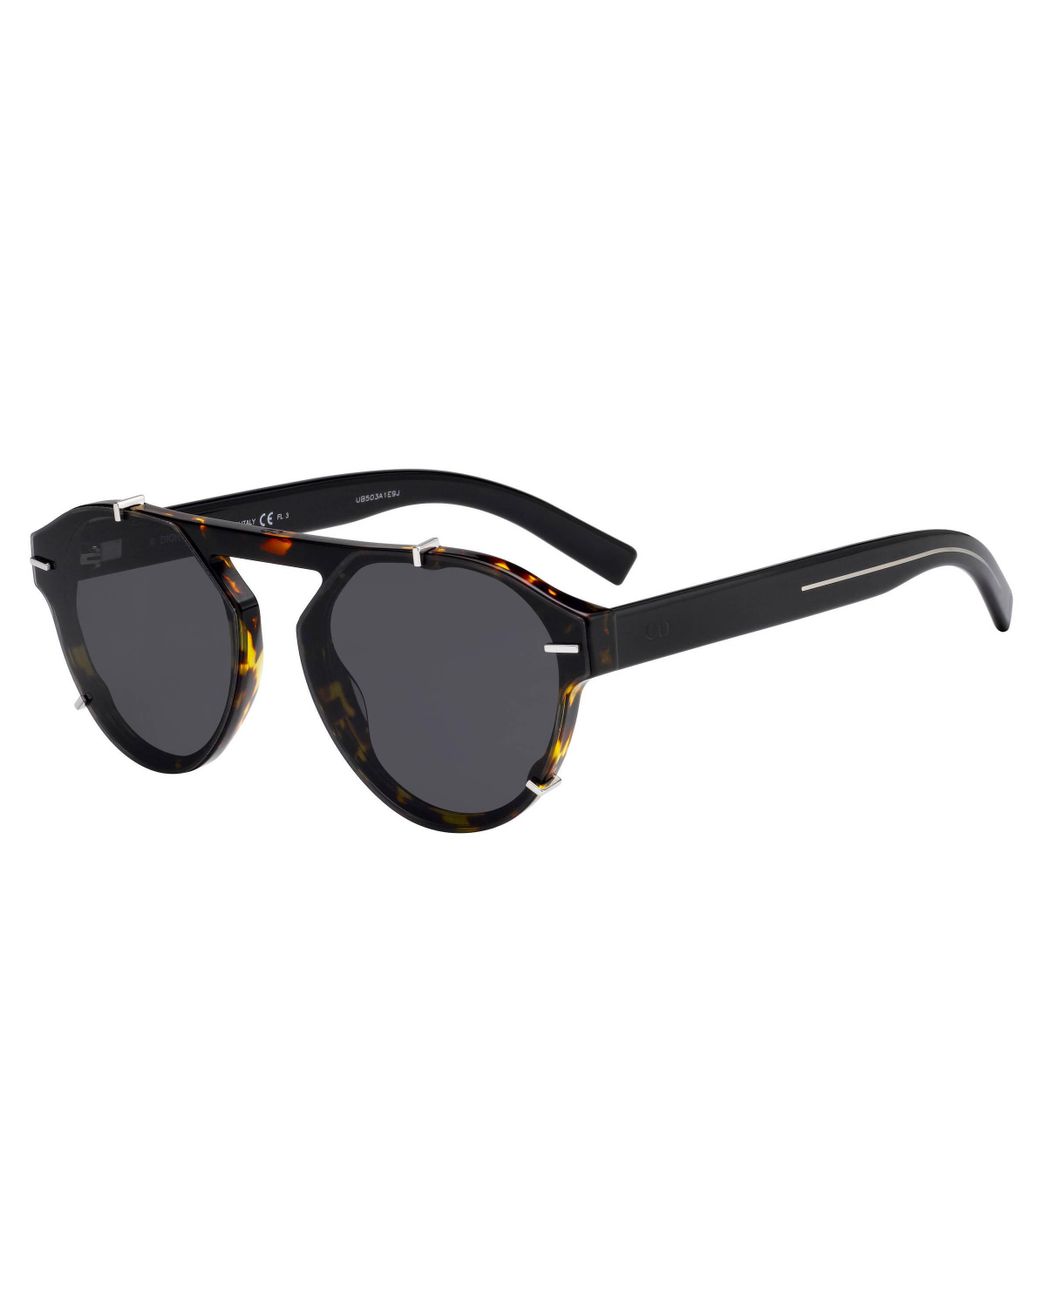 Chi tiết với hơn 62 về christian dior black tie sunglasses - Du học Akina